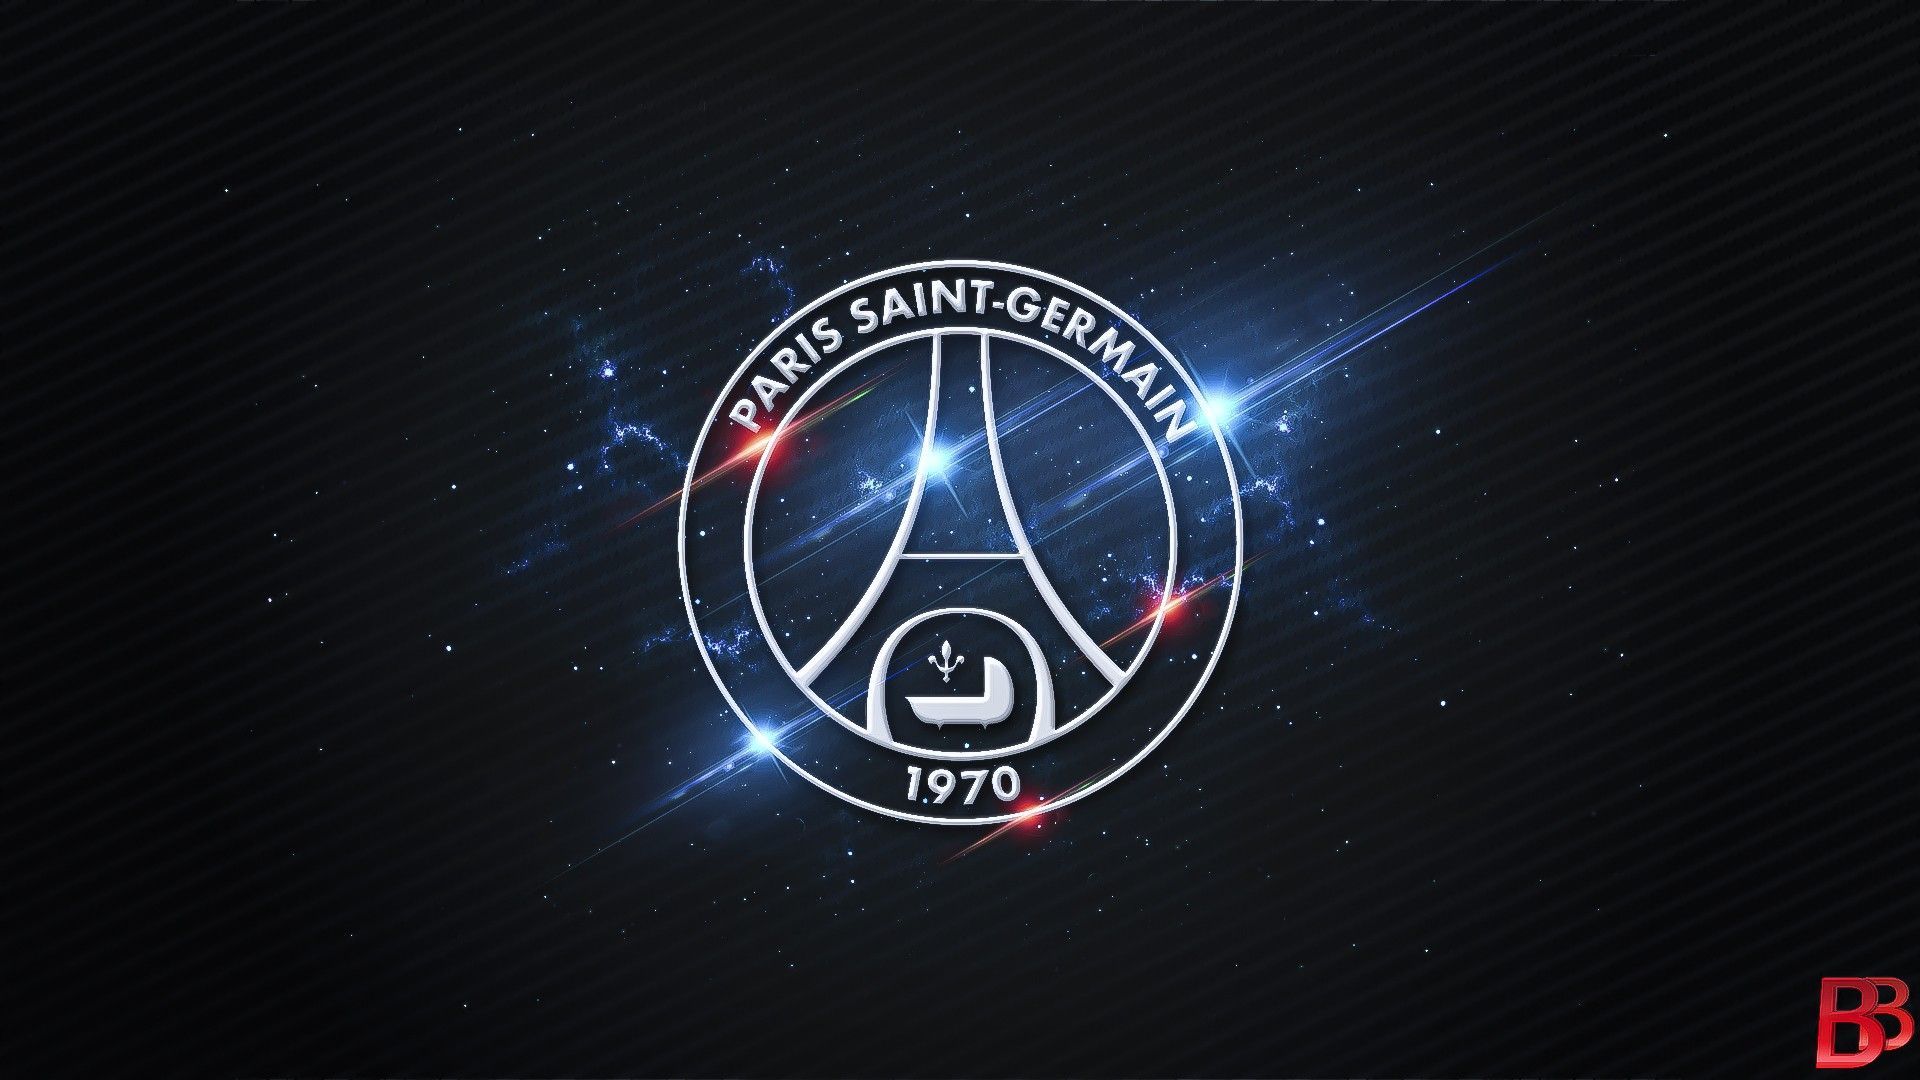 Paris Saint-Germain F.C. Logo Wallpapers